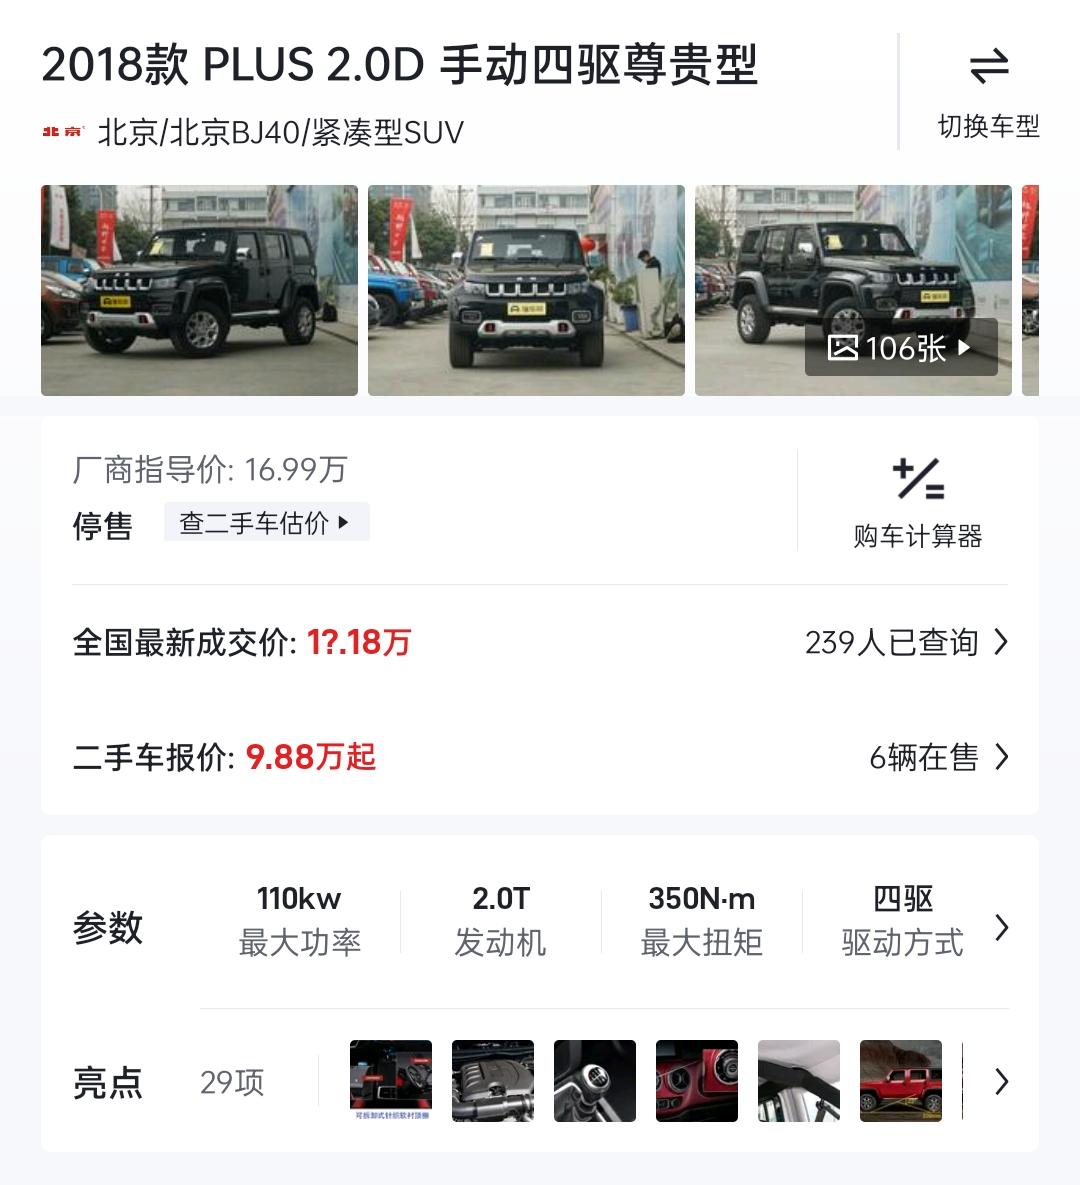 北京BJ40 本人小白，想买18款北京bj40plus柴油版二手的（有的app是写的19款，咱弄不太清），想问一下有没有